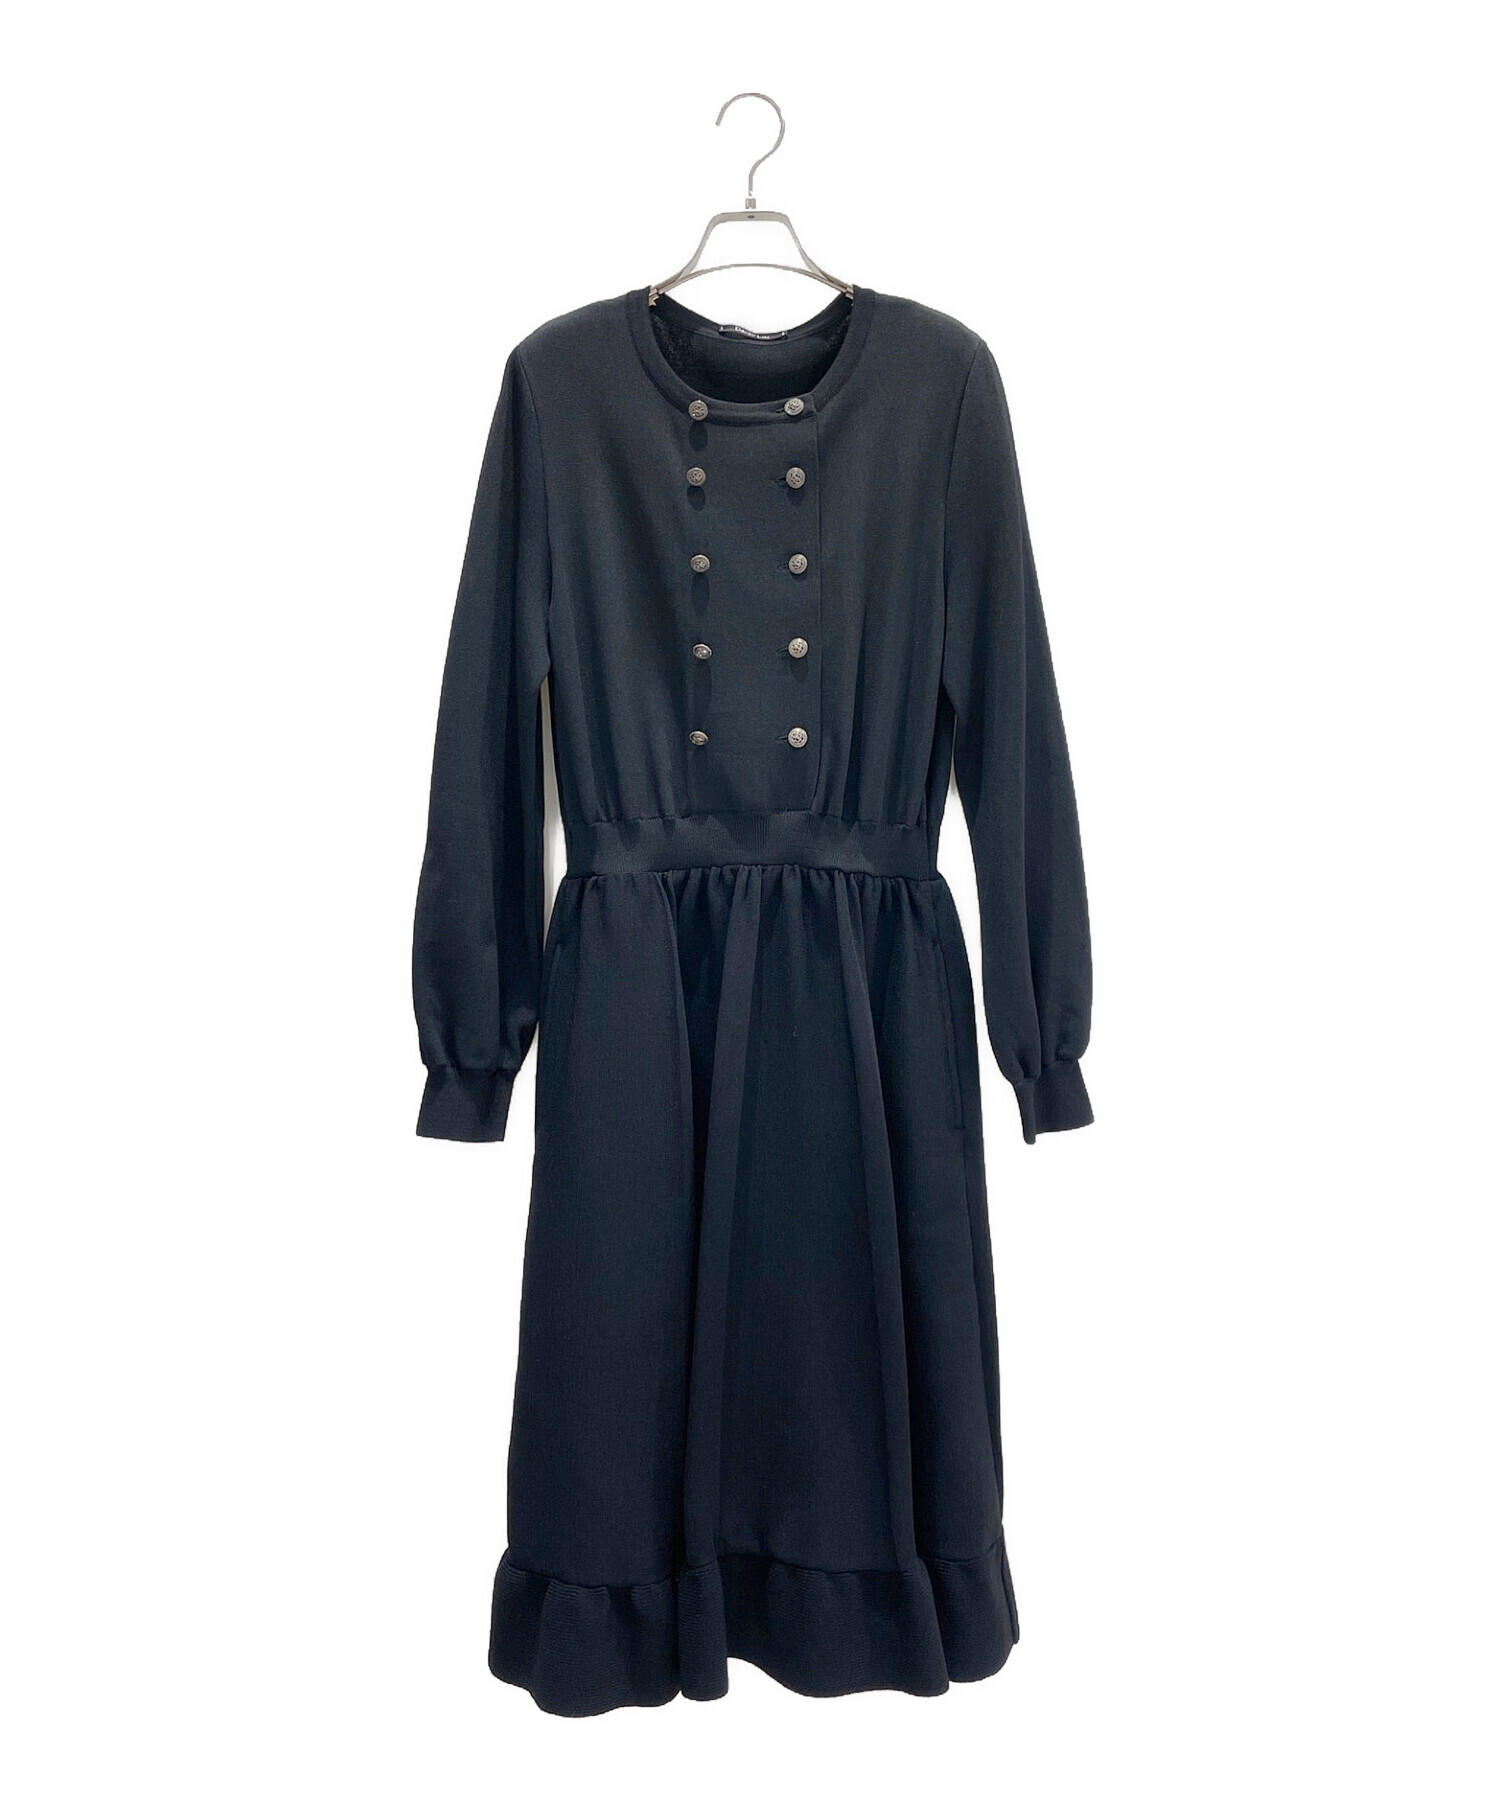 DAISY LIN (デイジーリン) Knit Social Dress ブラック サイズ:42